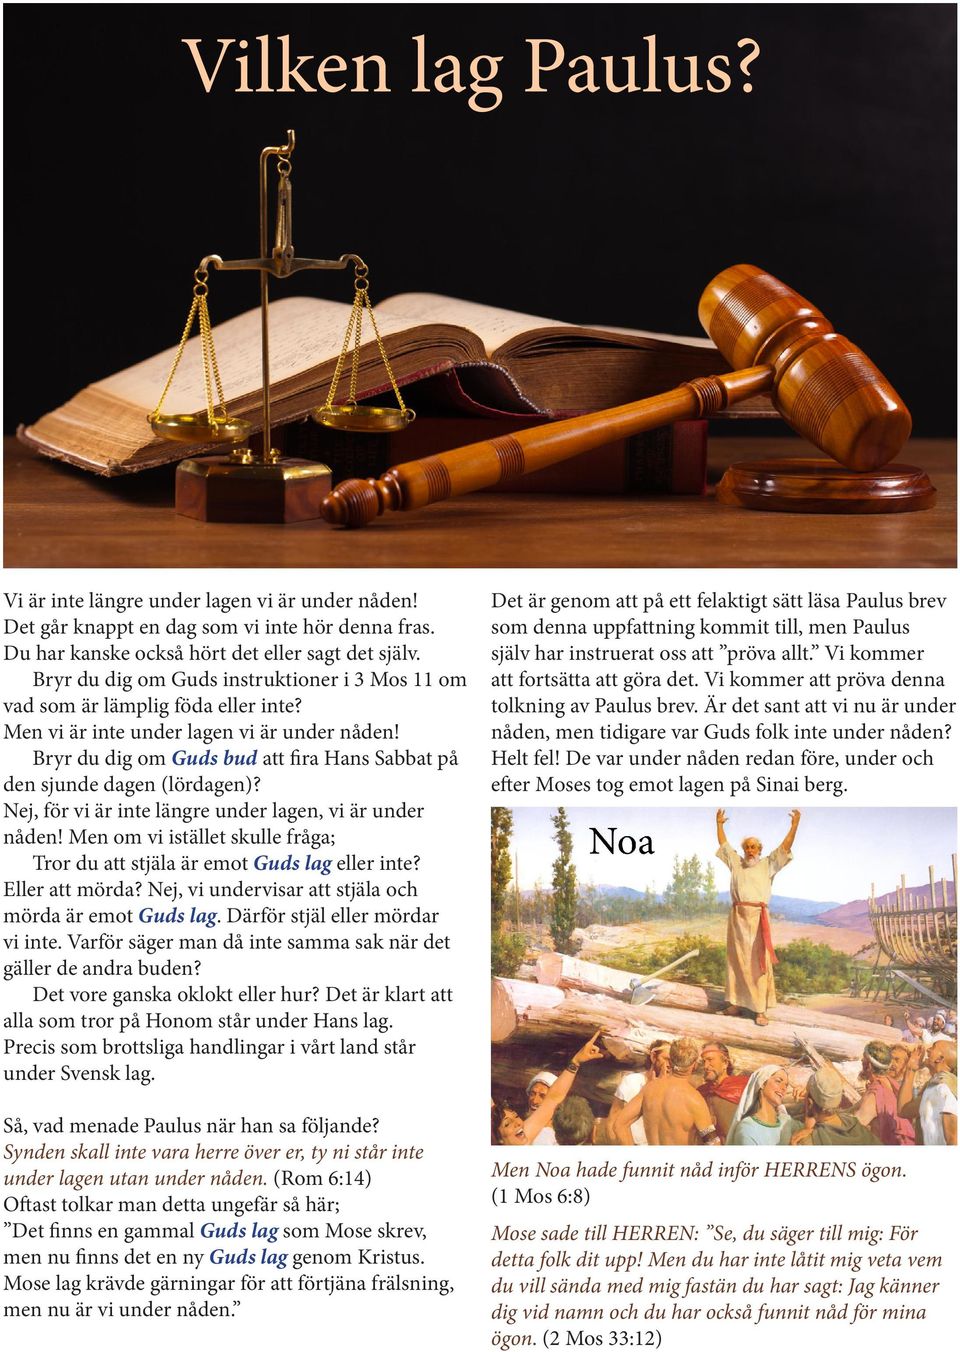 Bryr du dig om Guds bud att fira Hans Sabbat på den sjunde dagen (lördagen)? Nej, för vi är inte längre under lagen, vi är under nåden!